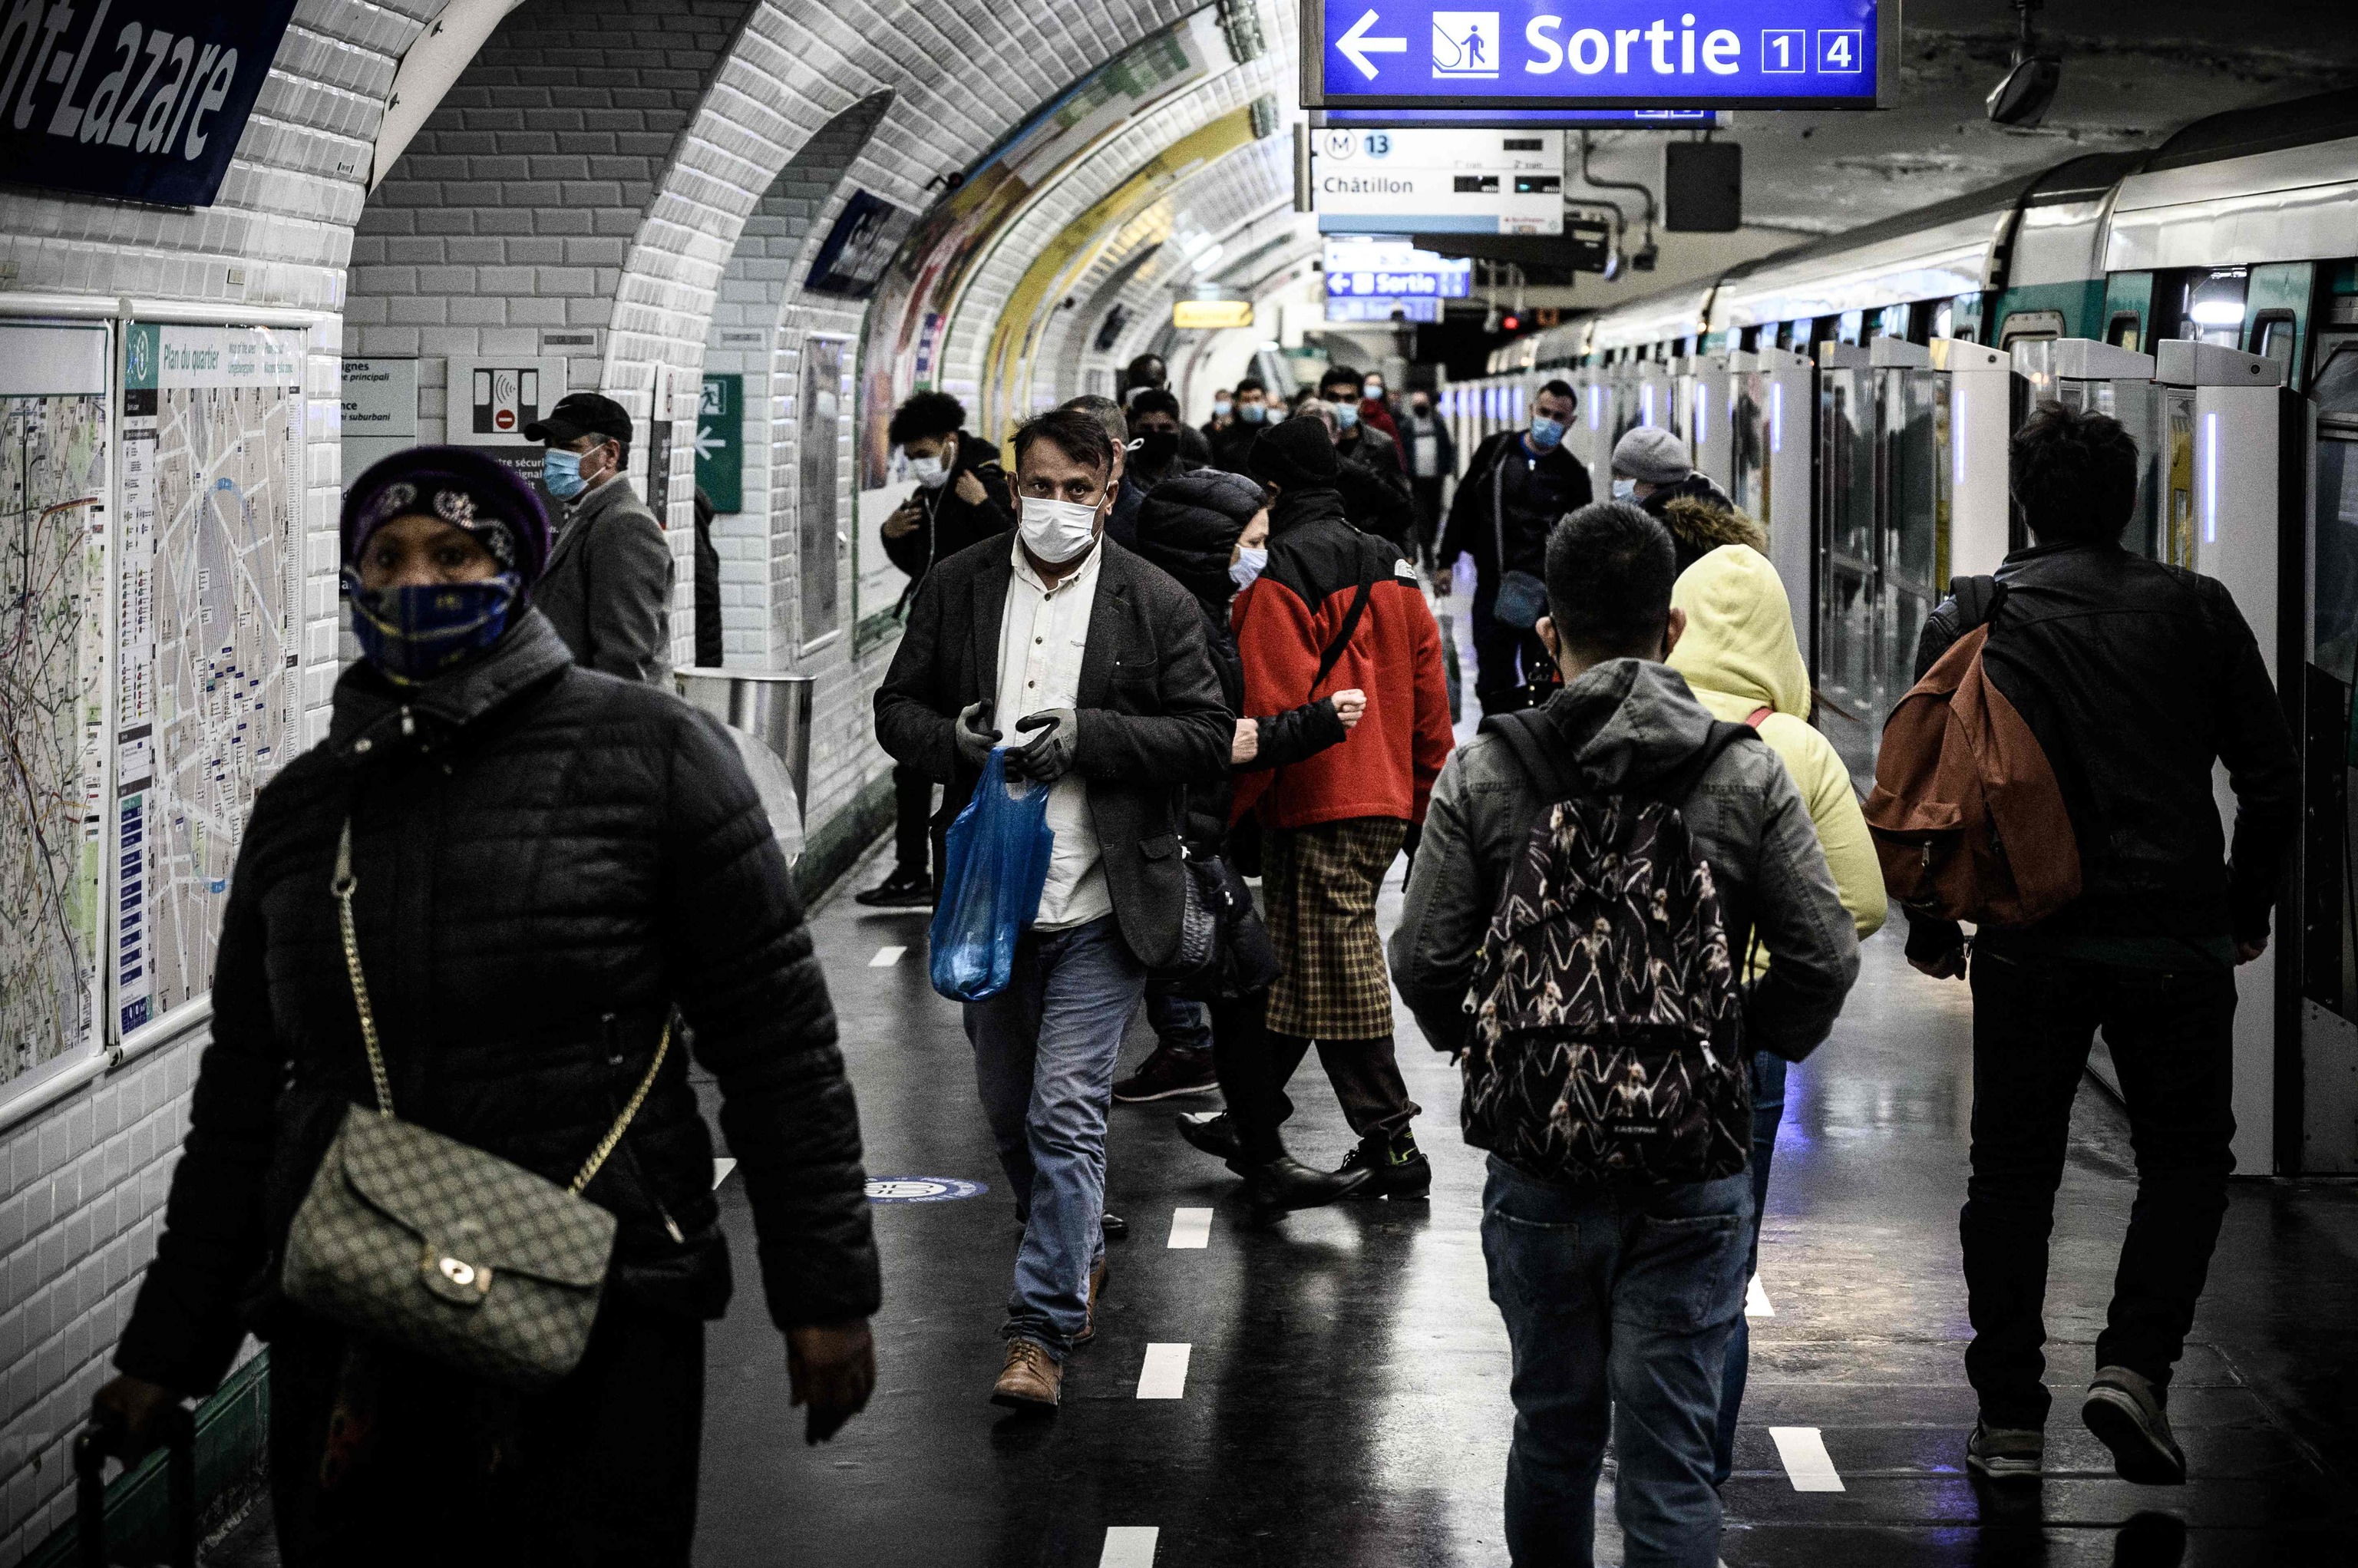 Passengers wearing face masks in metro.